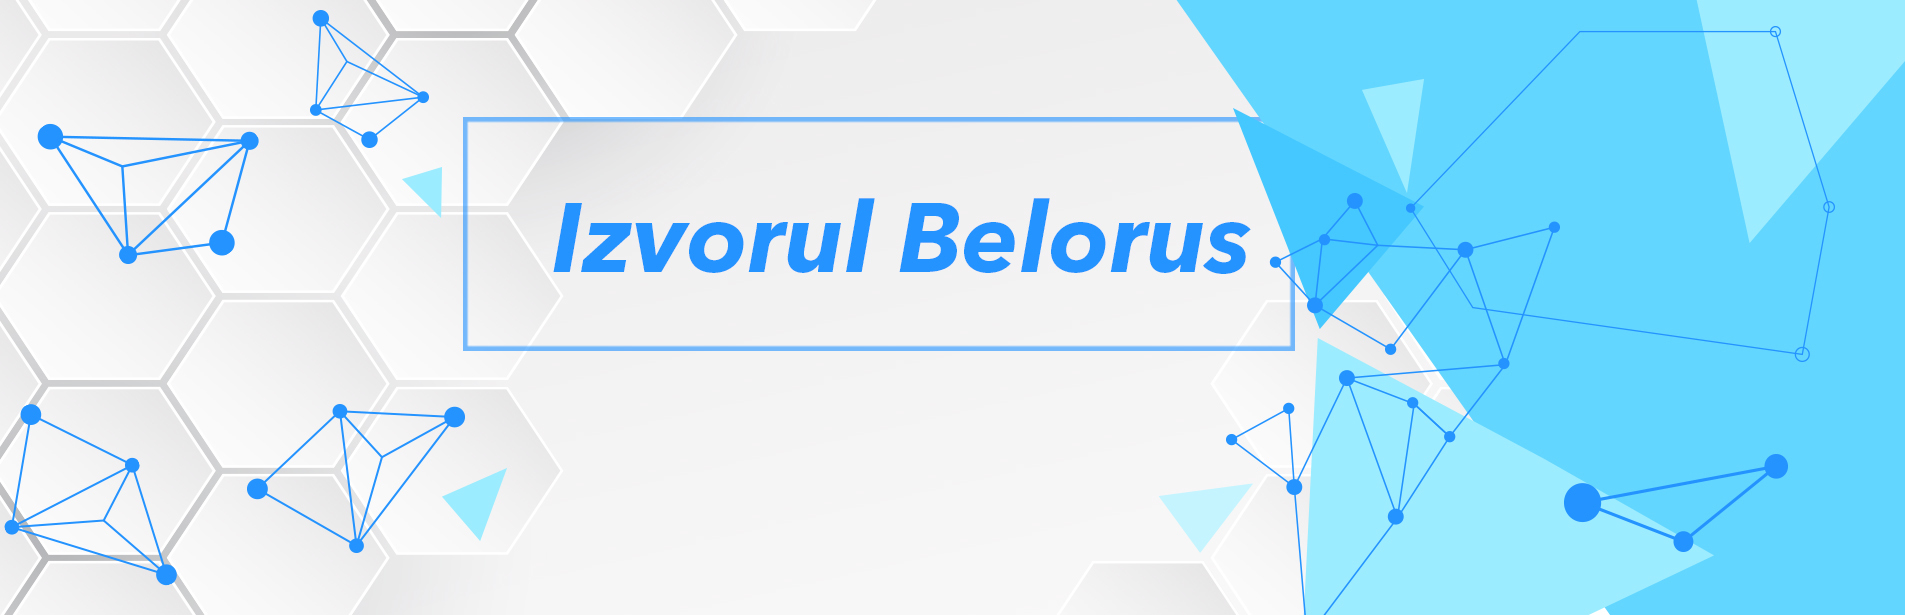 Izvorul Belorus